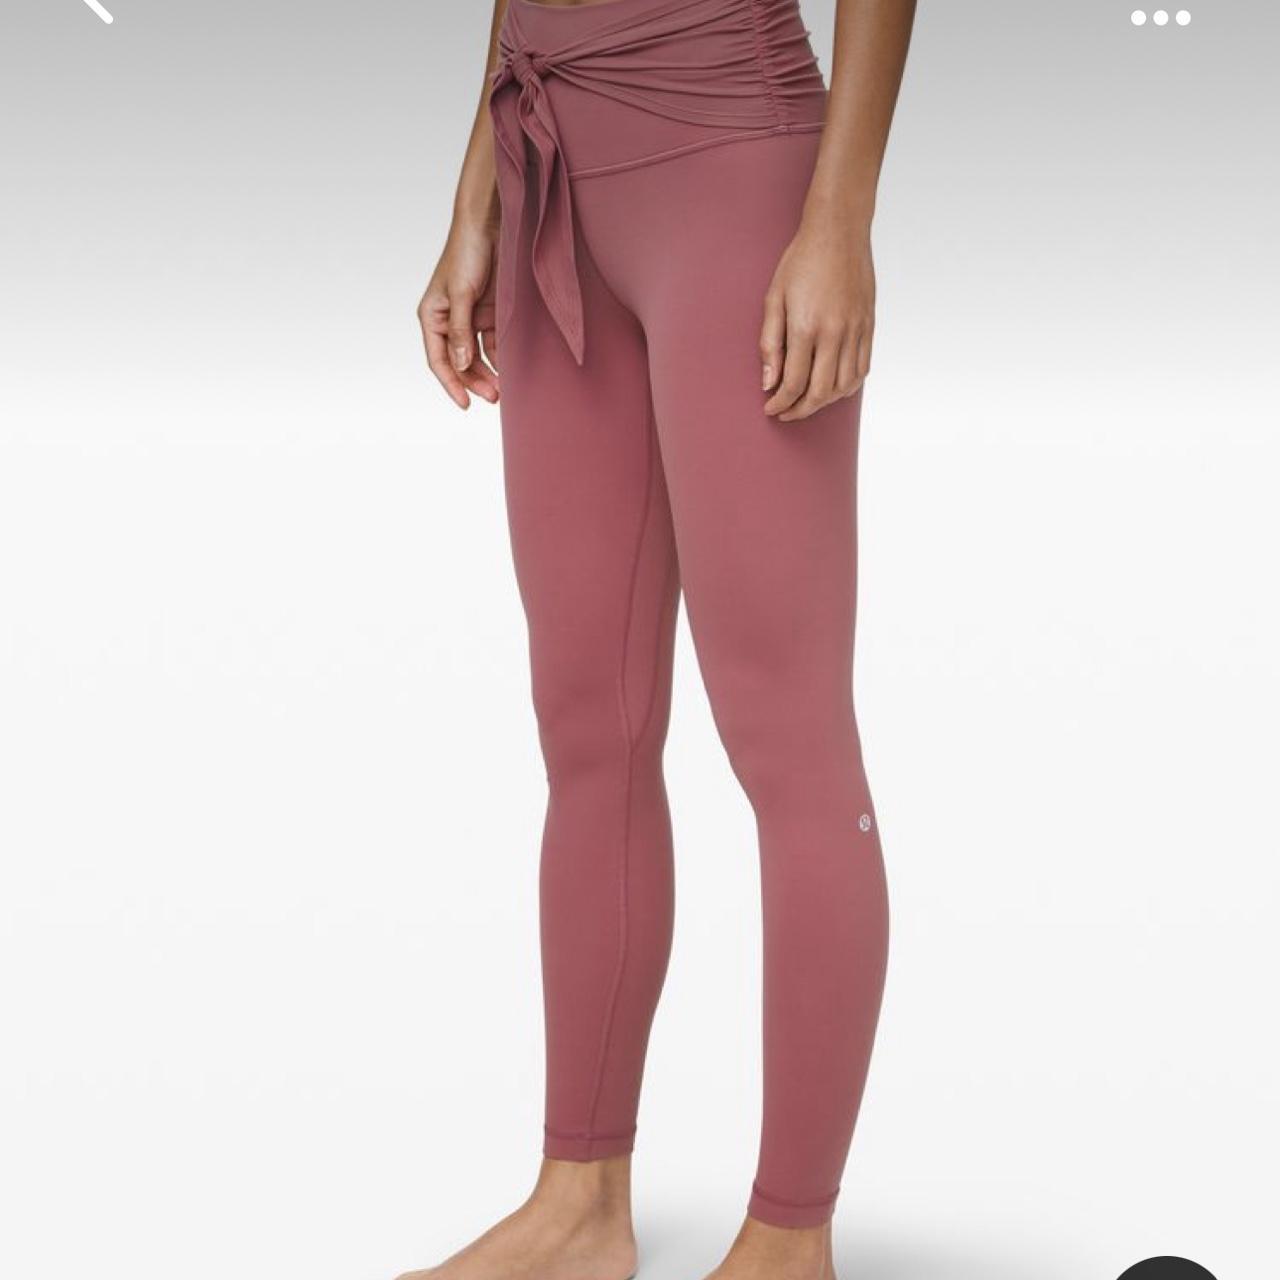 Lululemon align pant wrap waist full length leggings - Depop